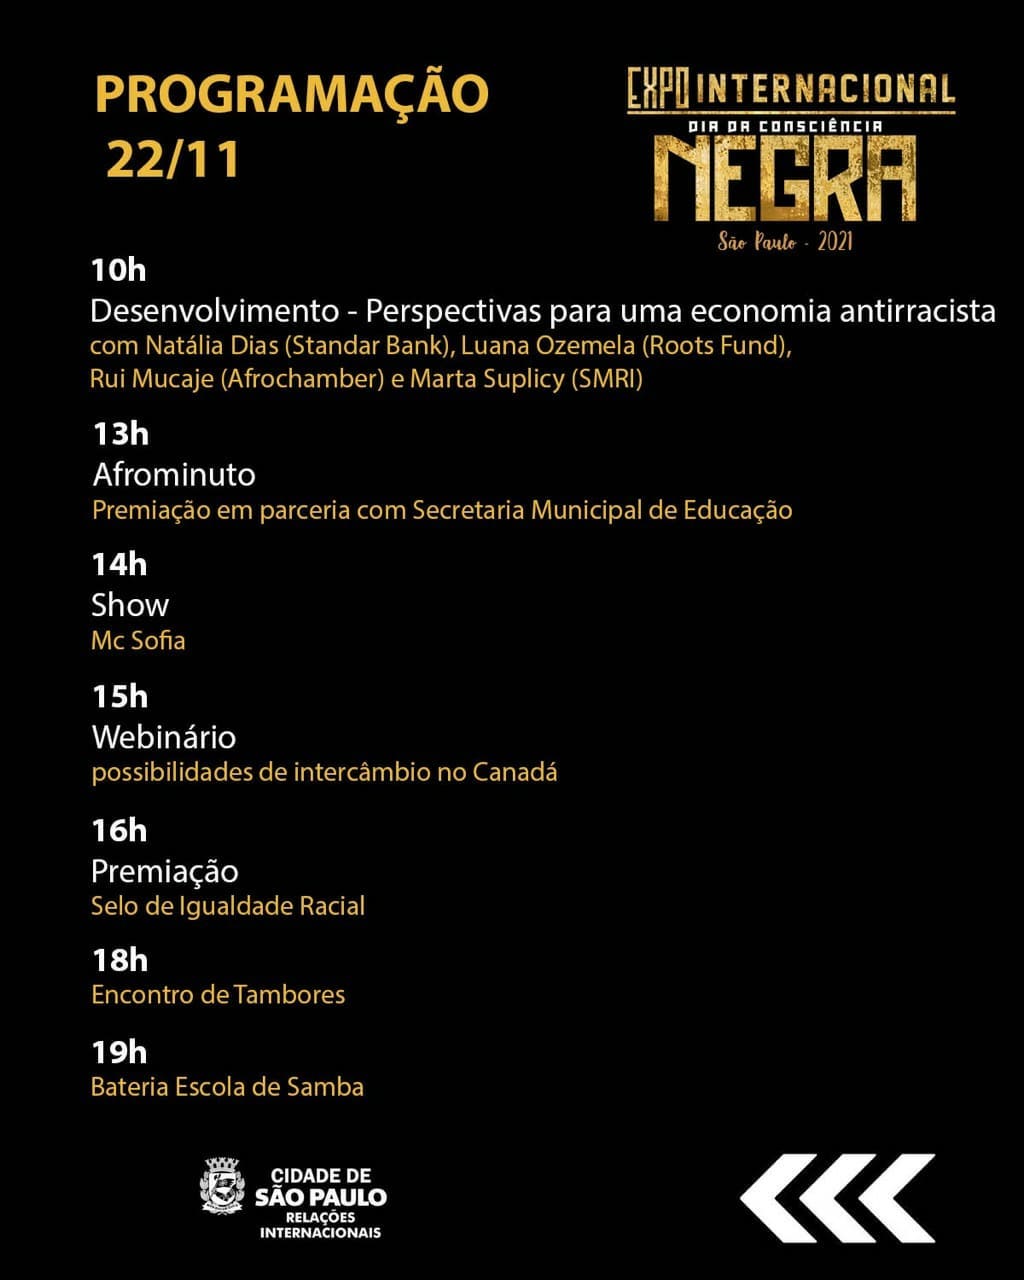 Programação da Expo Internacional Dia da Consciência Negra de São Paulo. Foto: Reprodução/Instagram